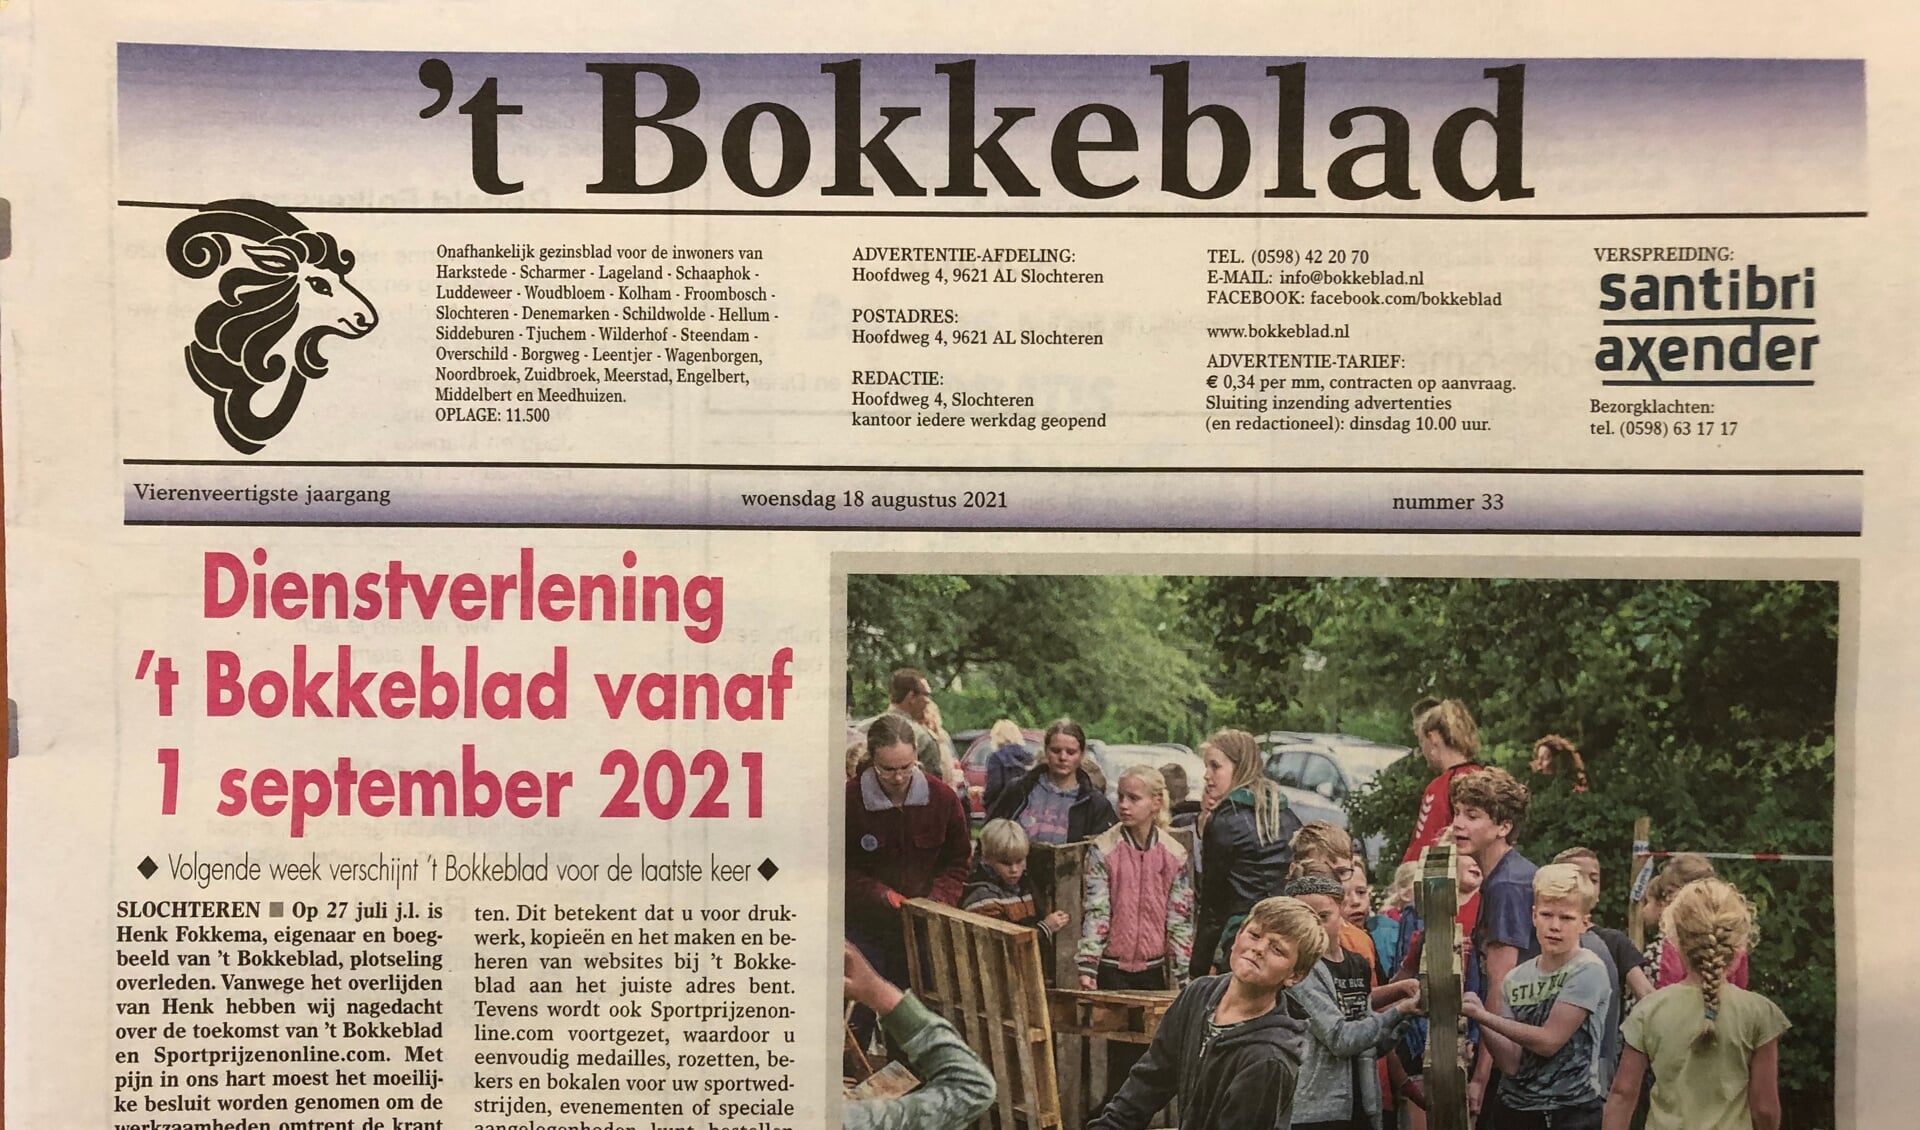 't Bokkeblad, een begrip in de voormalige gemeente Slochteren, verdwijnt na bijna 45 jaar.